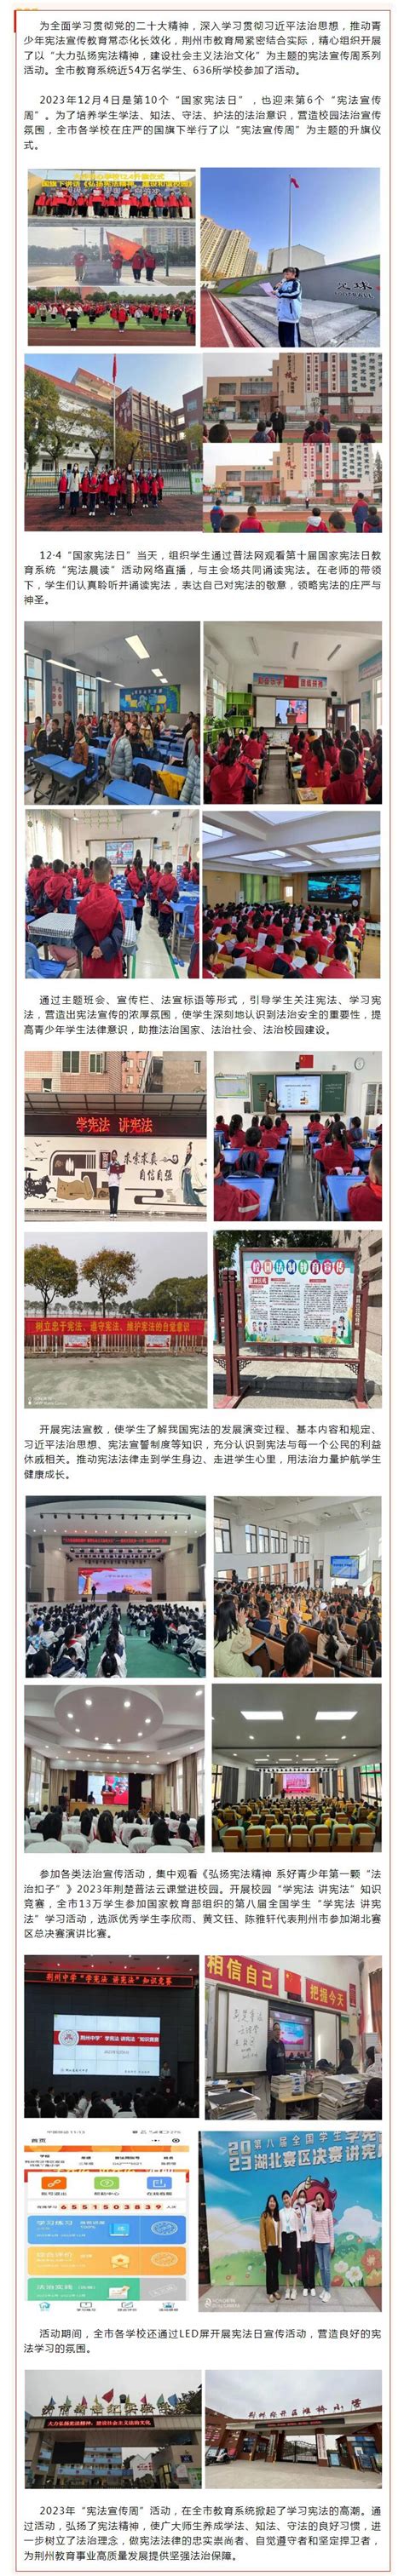 我院与荆州区教育局签订校地合作协议-外国语学院